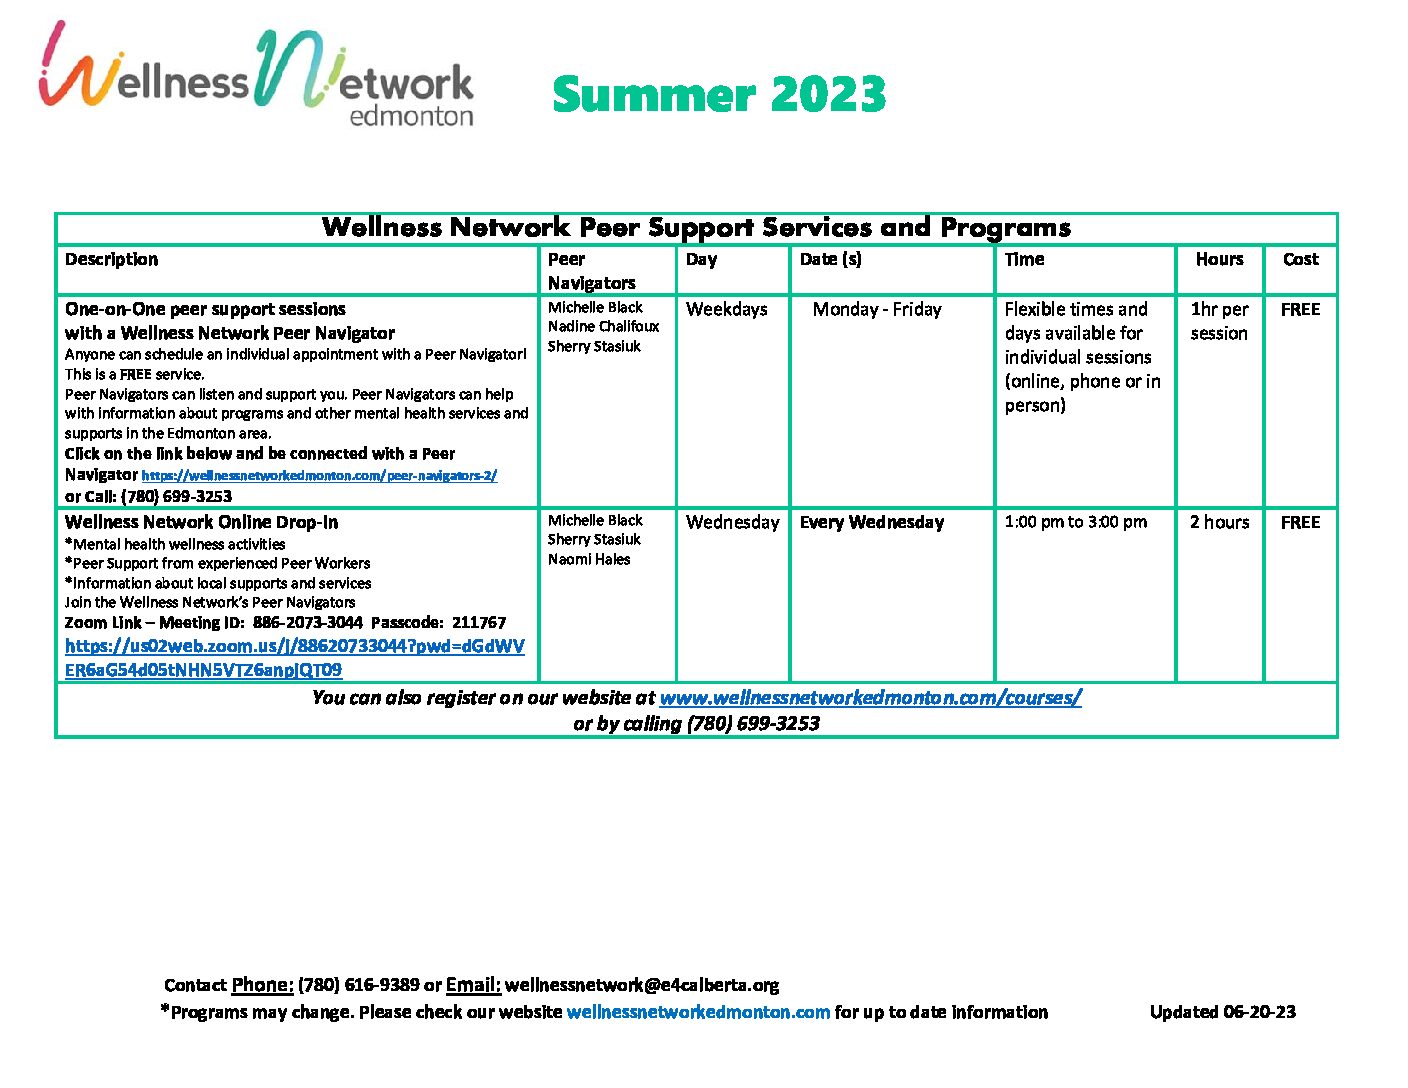 Wellness Network Summer Programs 2023